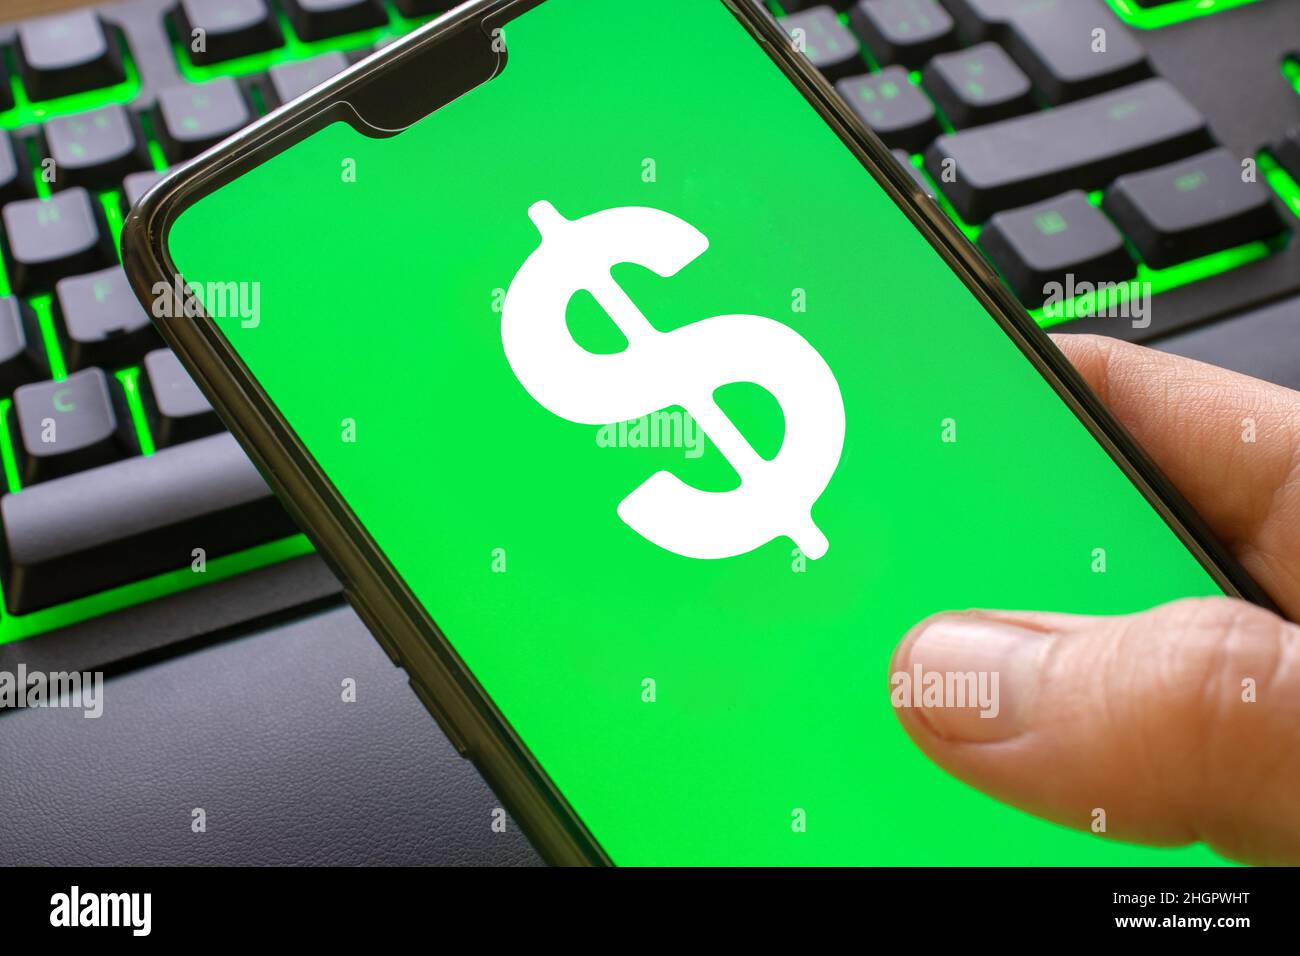 Telefono con simbolo verde del dollaro sullo schermo tenuto da una mano. Utilizzo dello smartphone per guadagnare denaro online con il logo della moneta. Foto Stock